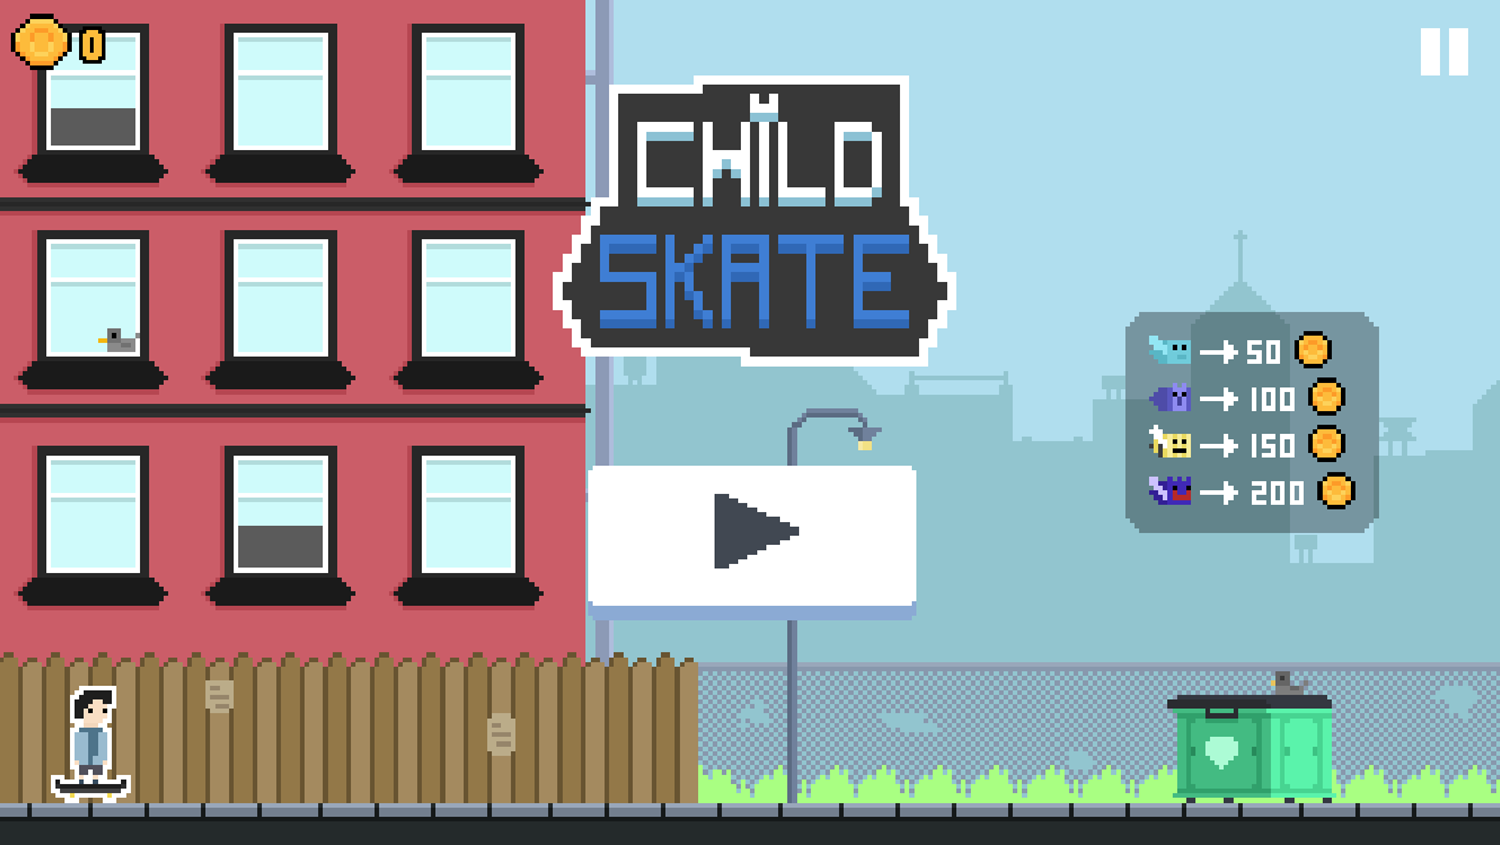 Child Skate Game Welcome Screen Screenshot.